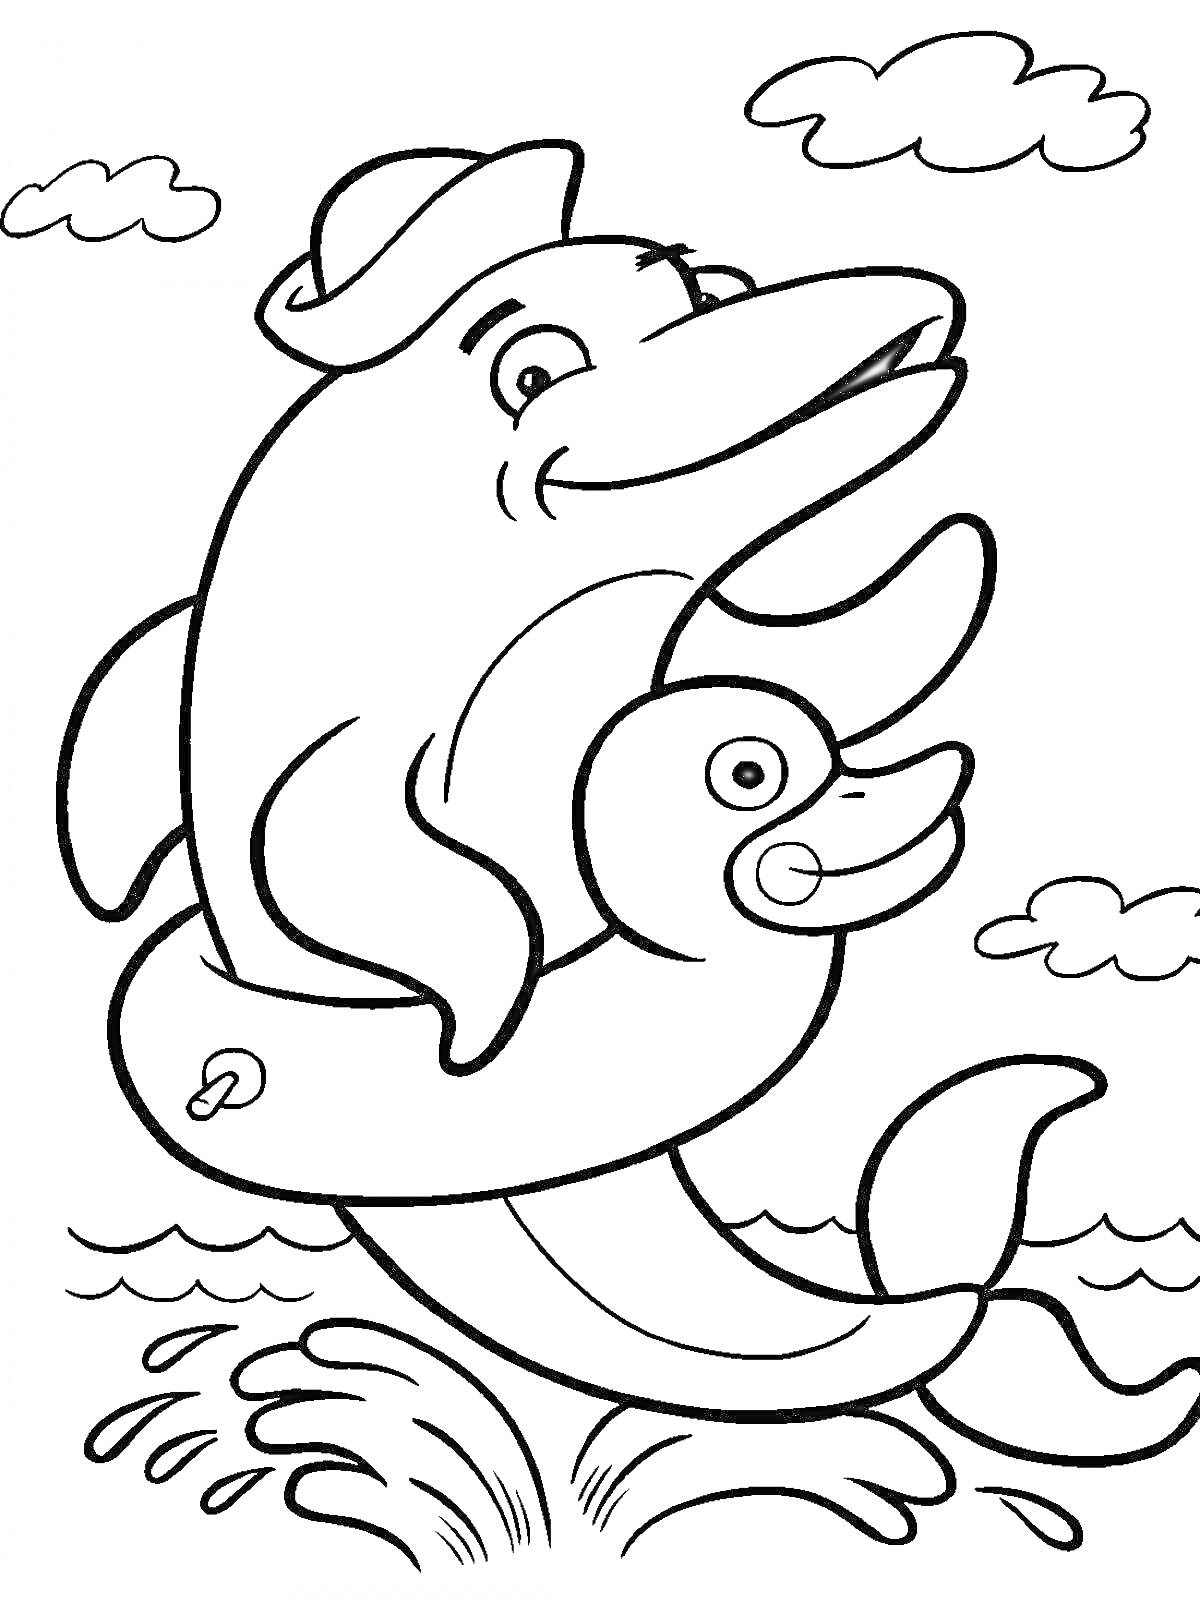 Раскраска Дельфин с игрушечным кругом и шапкой, плывущий в море, на фоне облаков